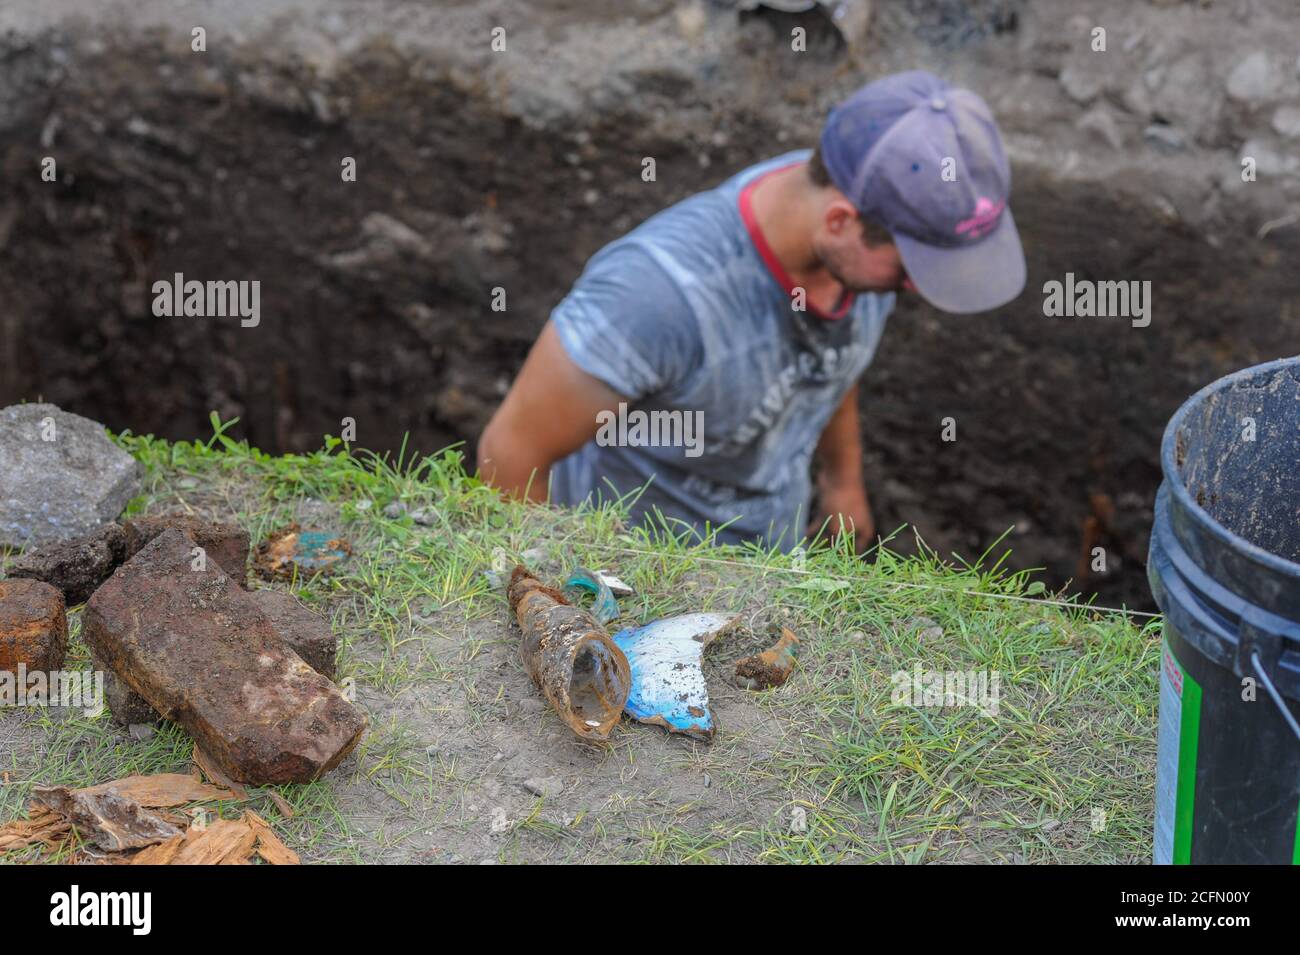 HAZLETON, PA - 30 GIUGNO: Justin Uehlein lavora nel sito di uno scavo archeologico 30 giugno 2014 a Hazleton, Pennsylvania. Il team sta guardando attraverso Foto Stock